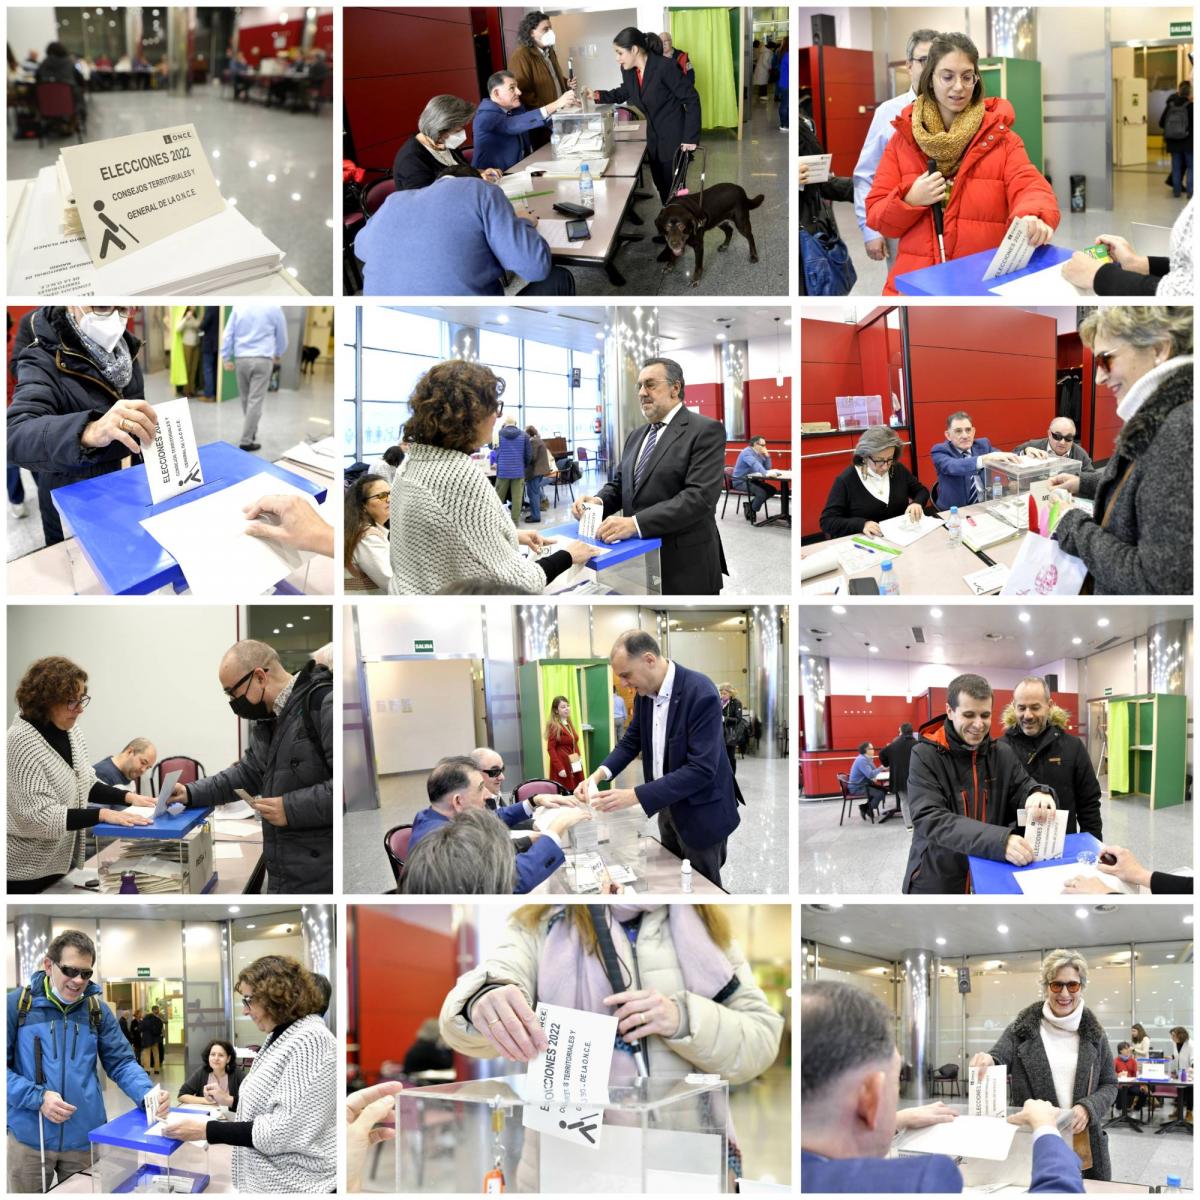 Collage con varios momentos de las votaciones celebradas en Madrid